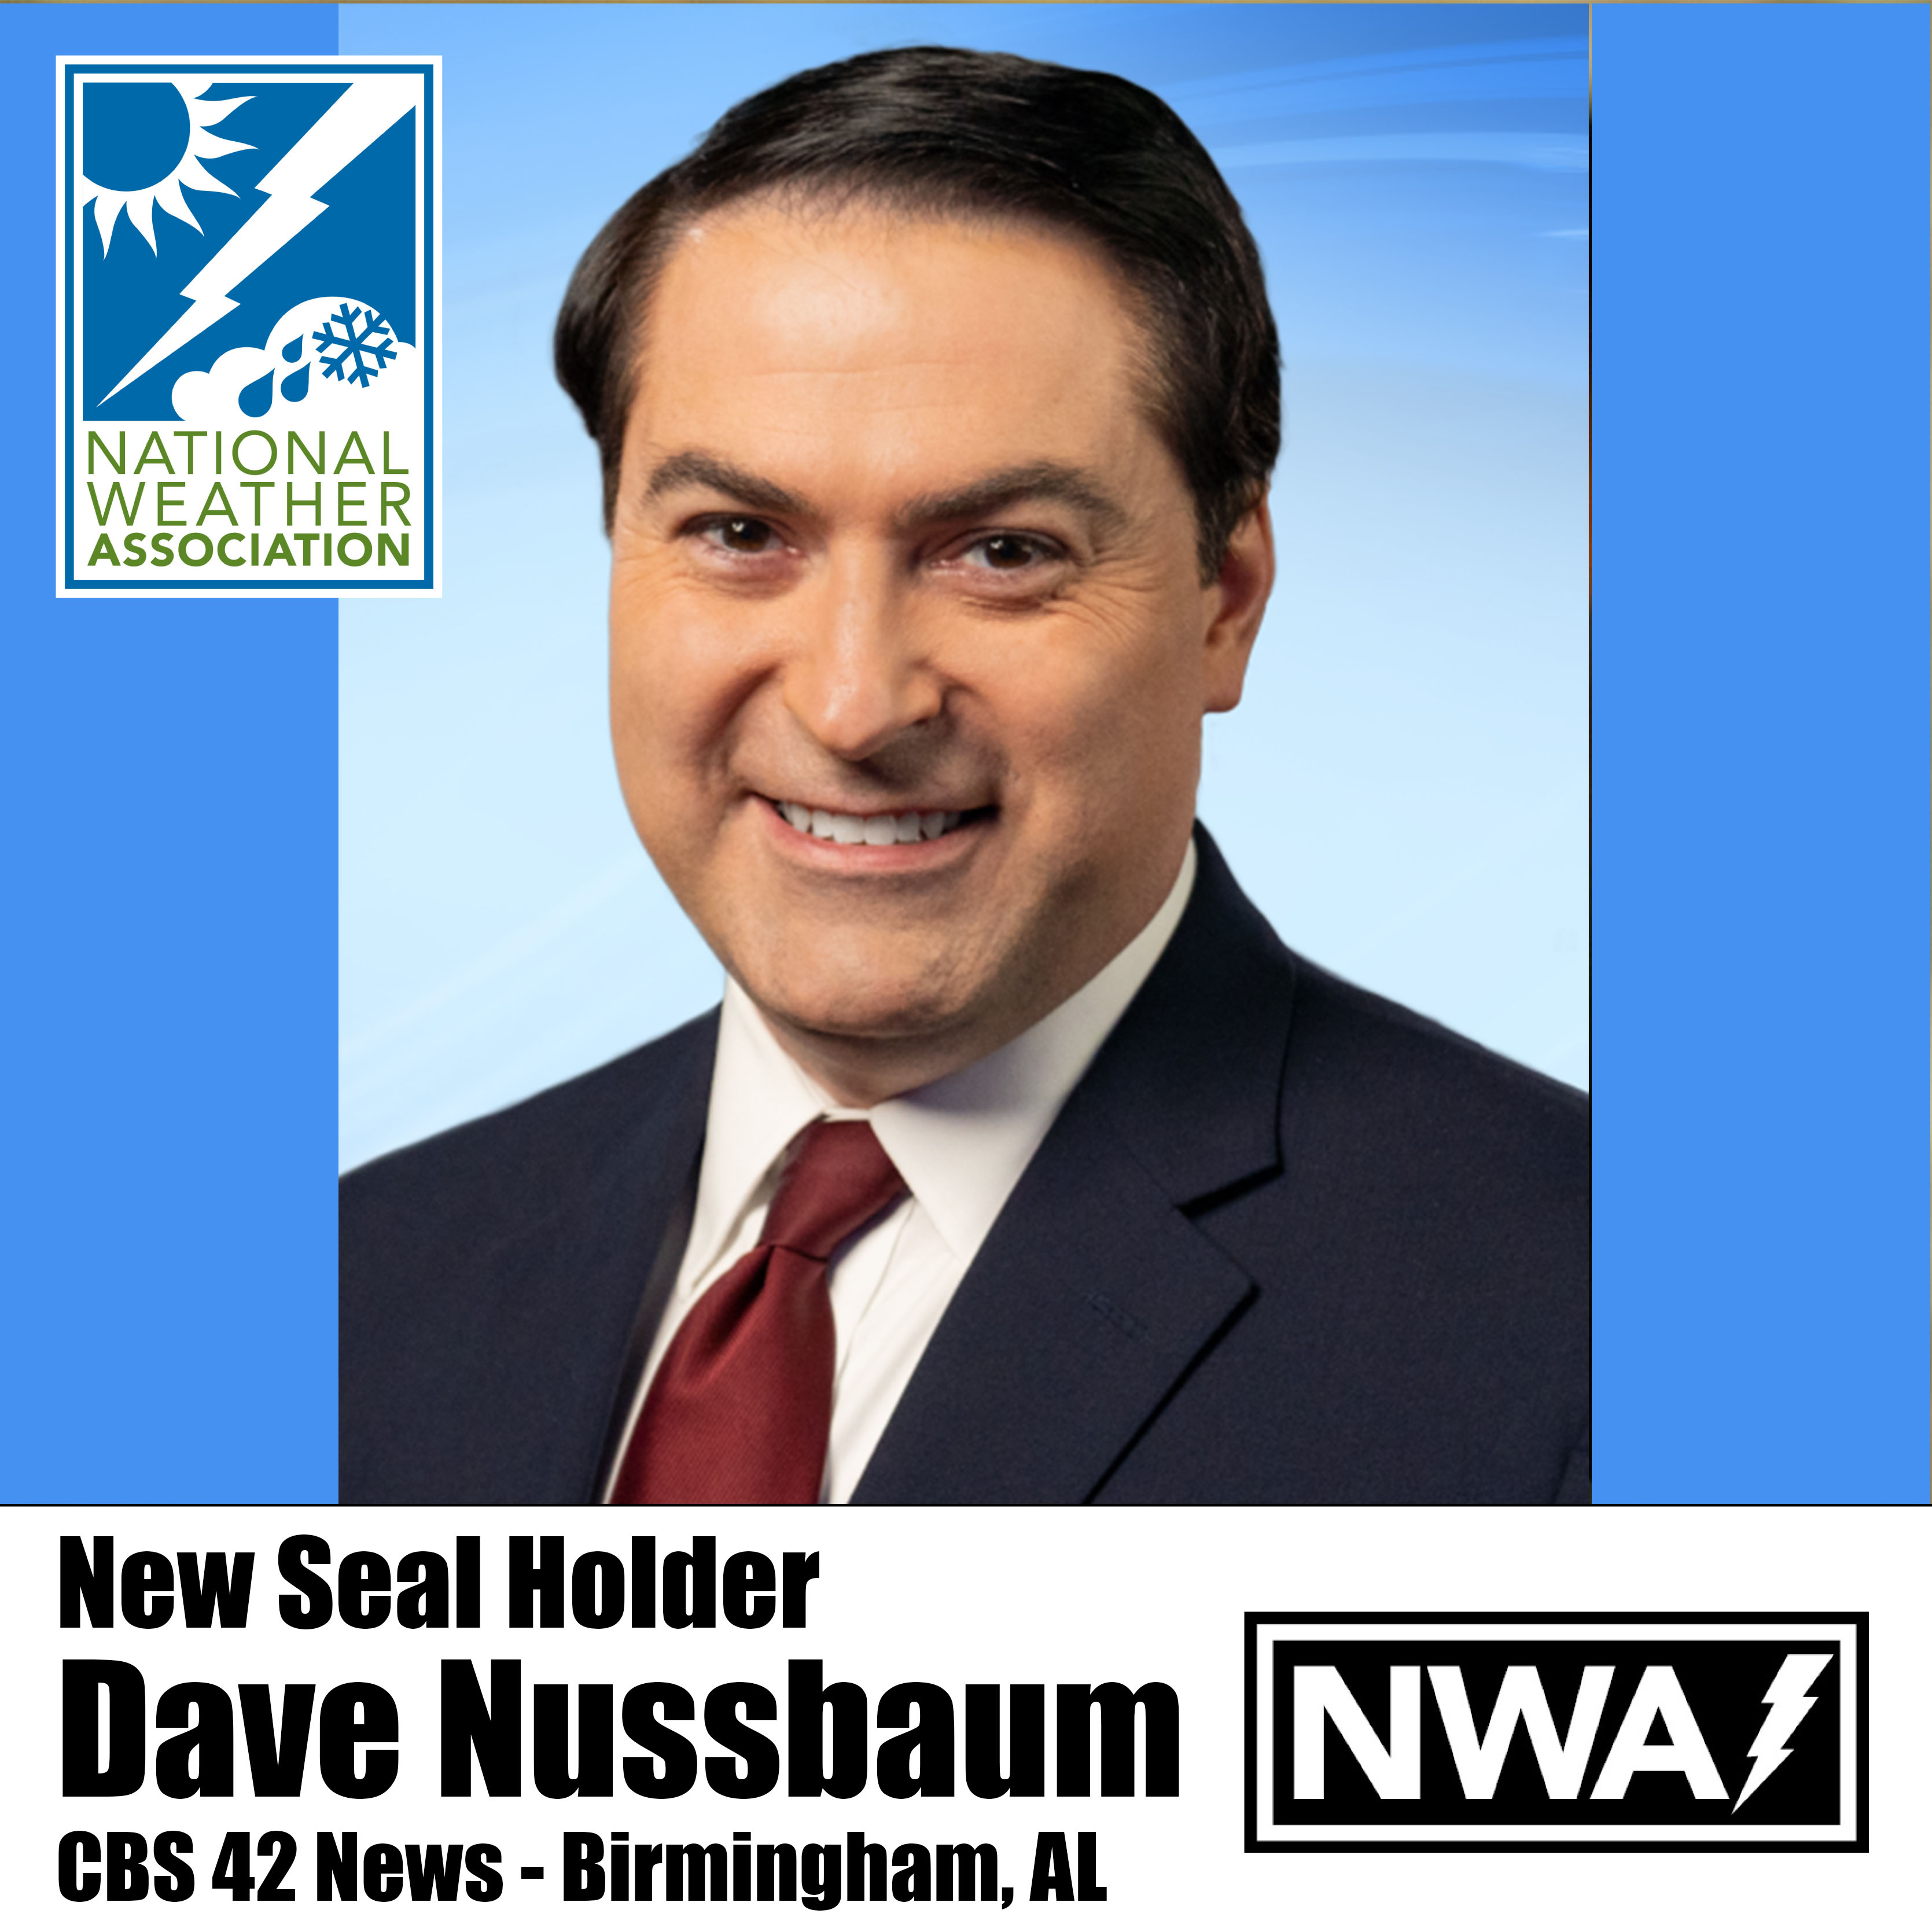 Dave Nussbaum of CBS 42 News in Birmingham, Alabama